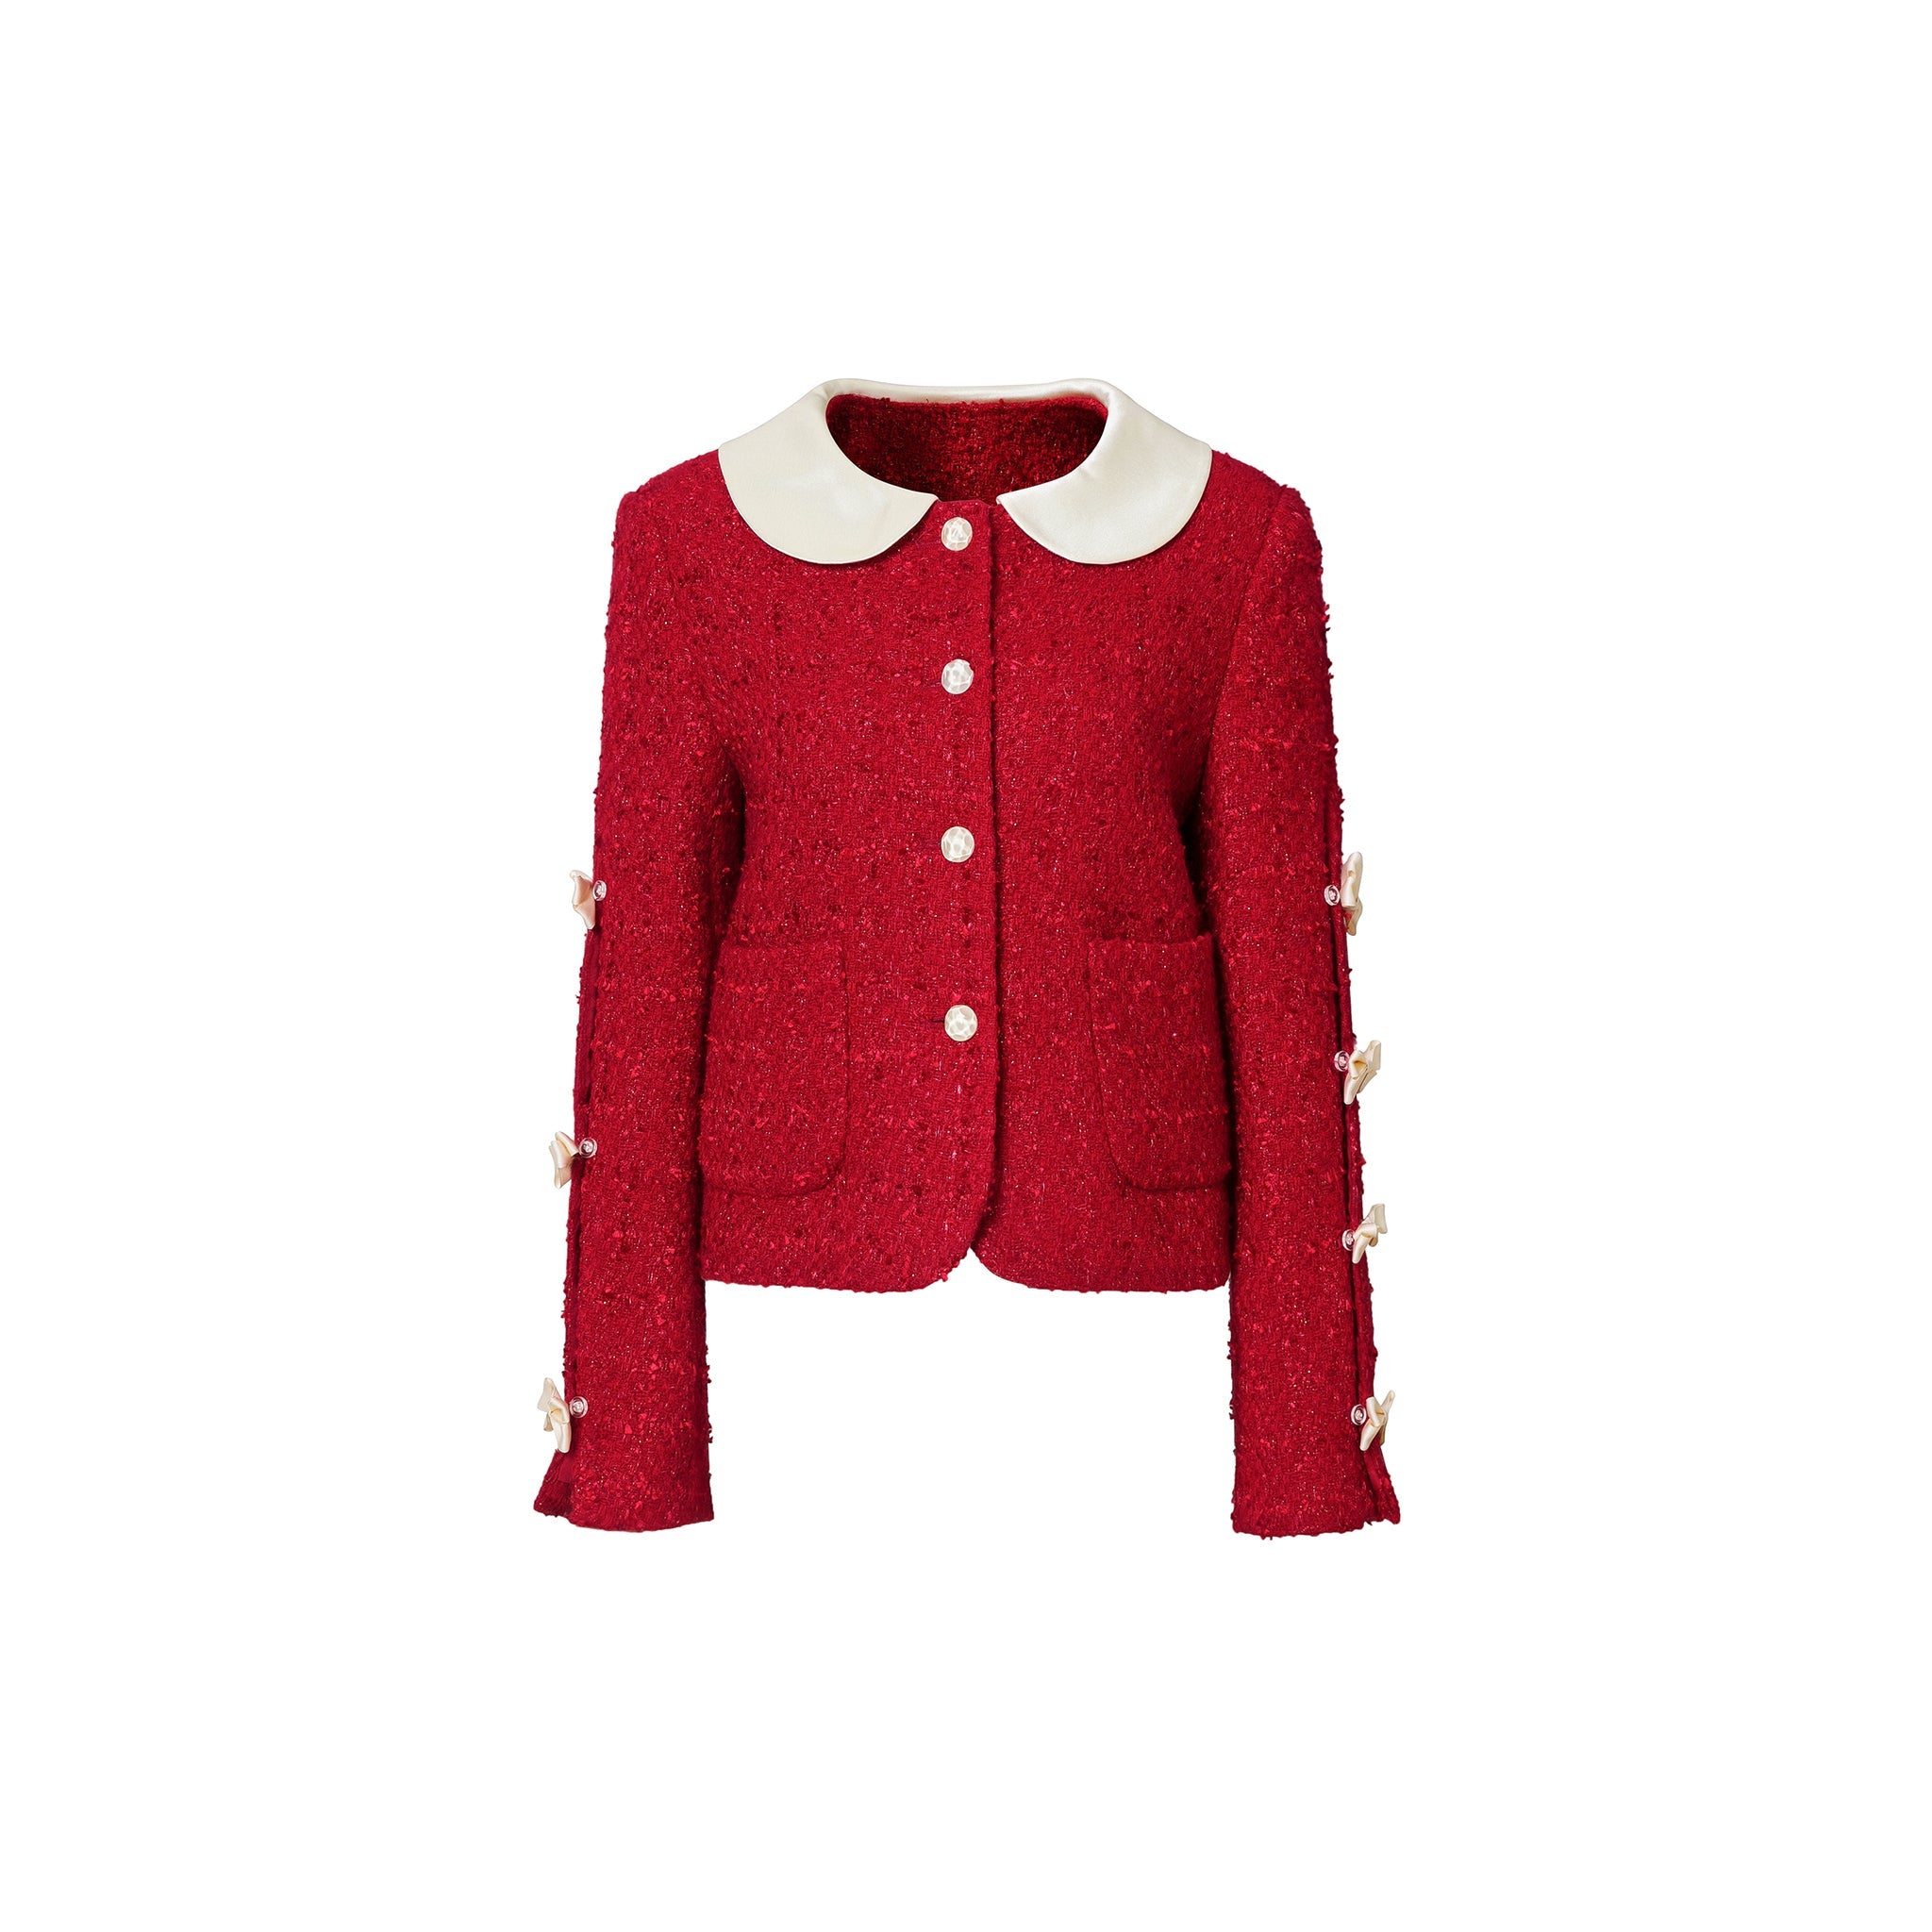 HERLIAN Red Bowknot Tweed Jacket